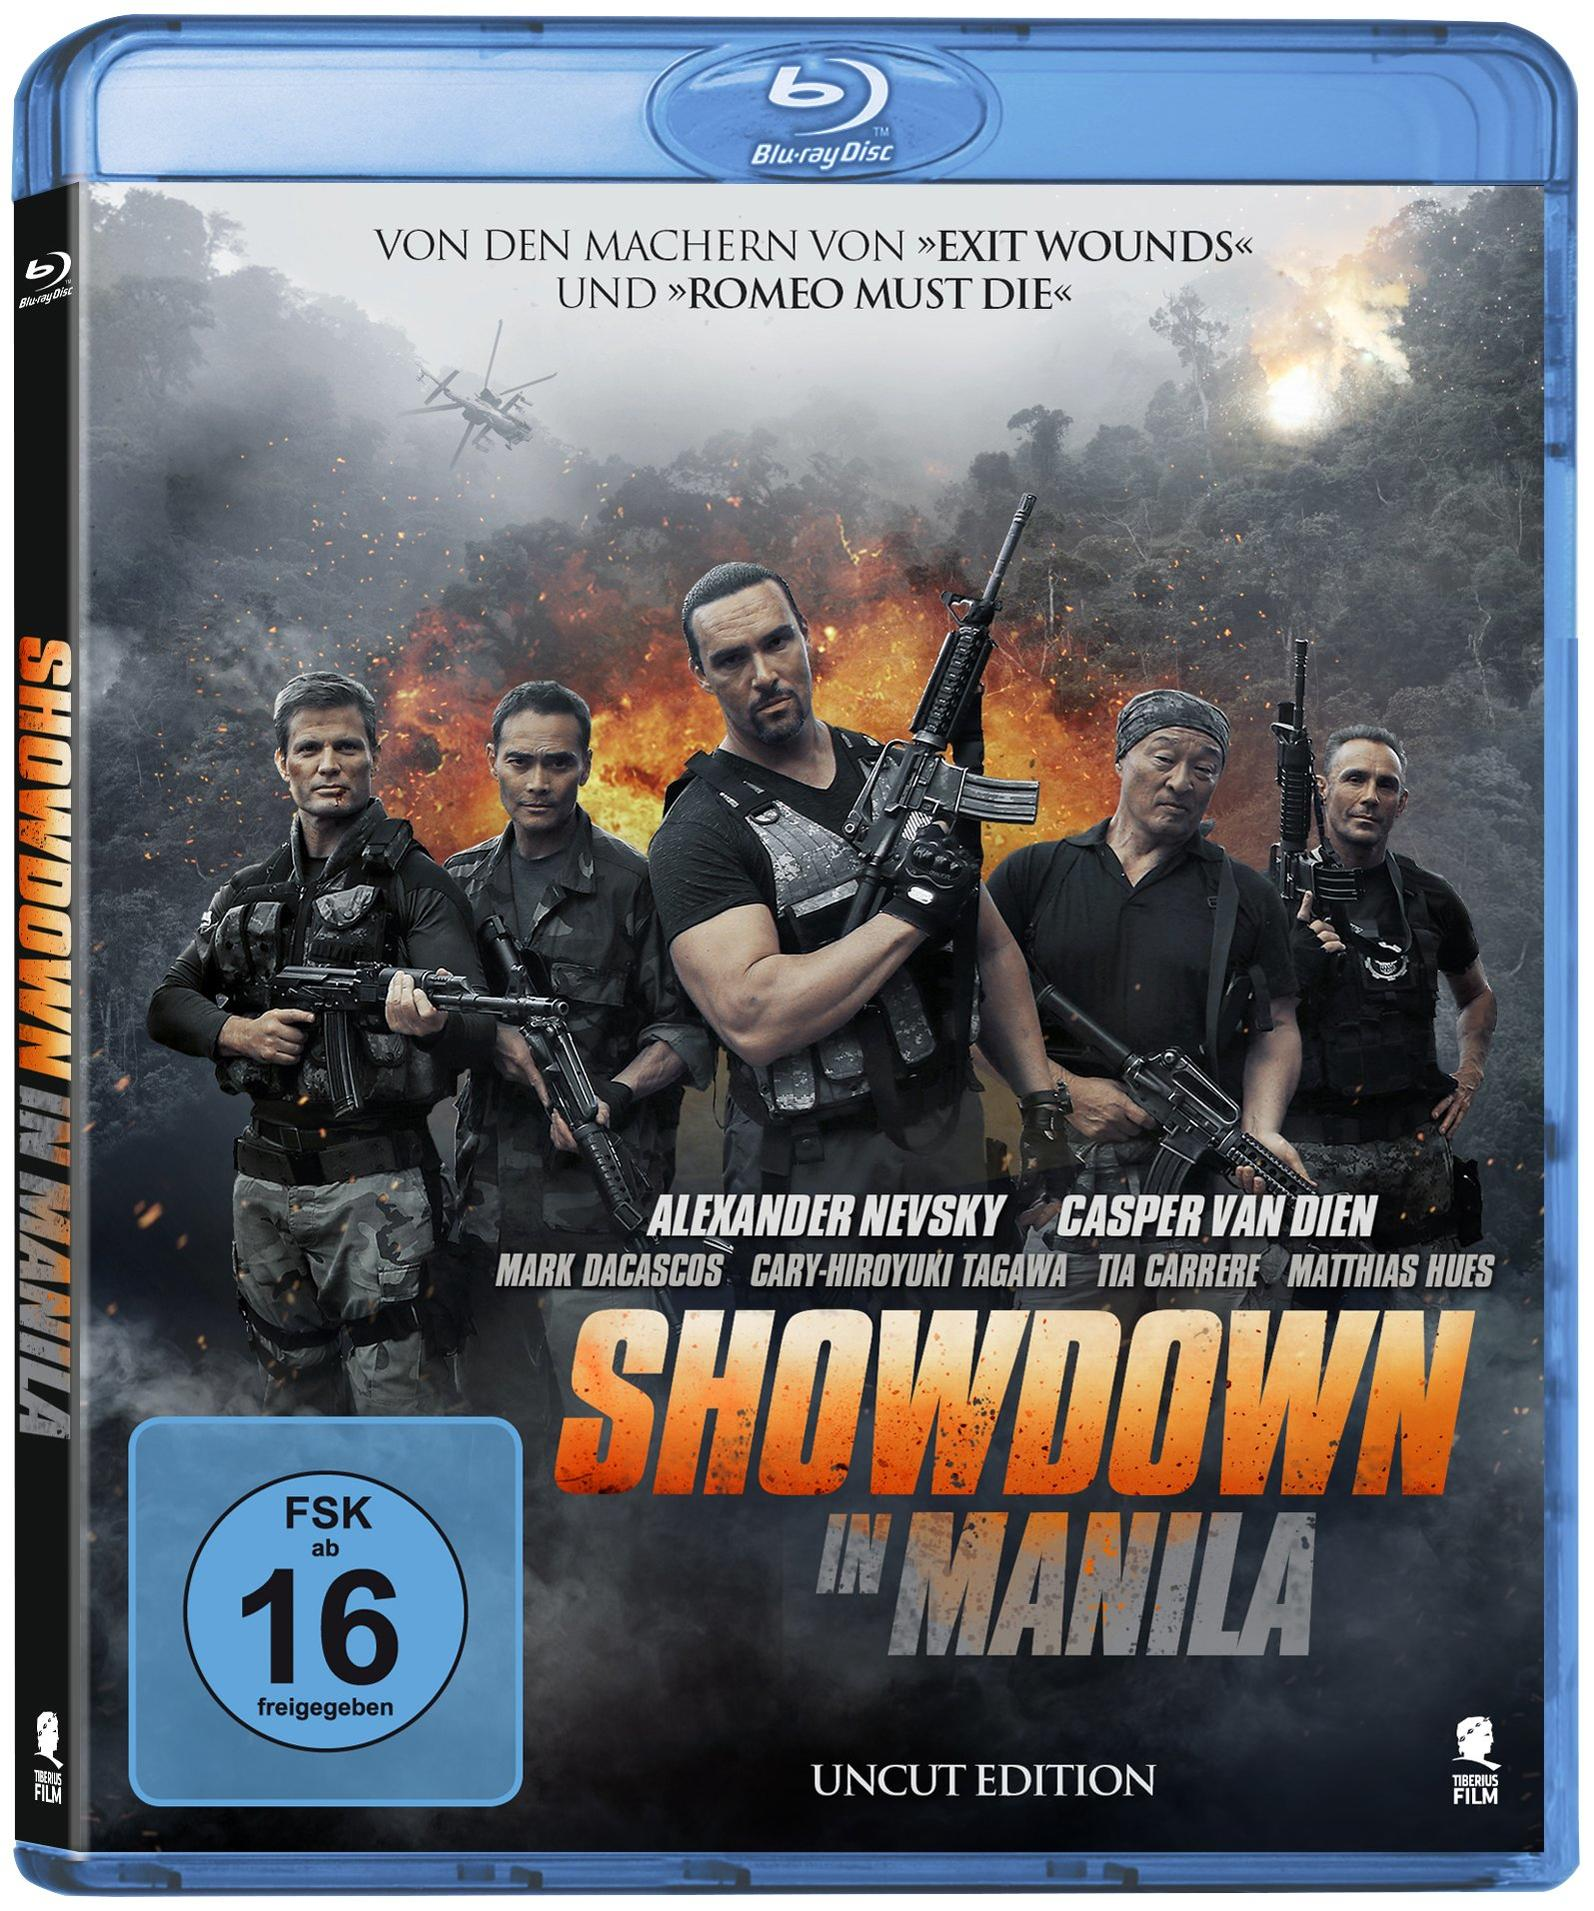 MANILA IN Blu-ray SHOWDOWN